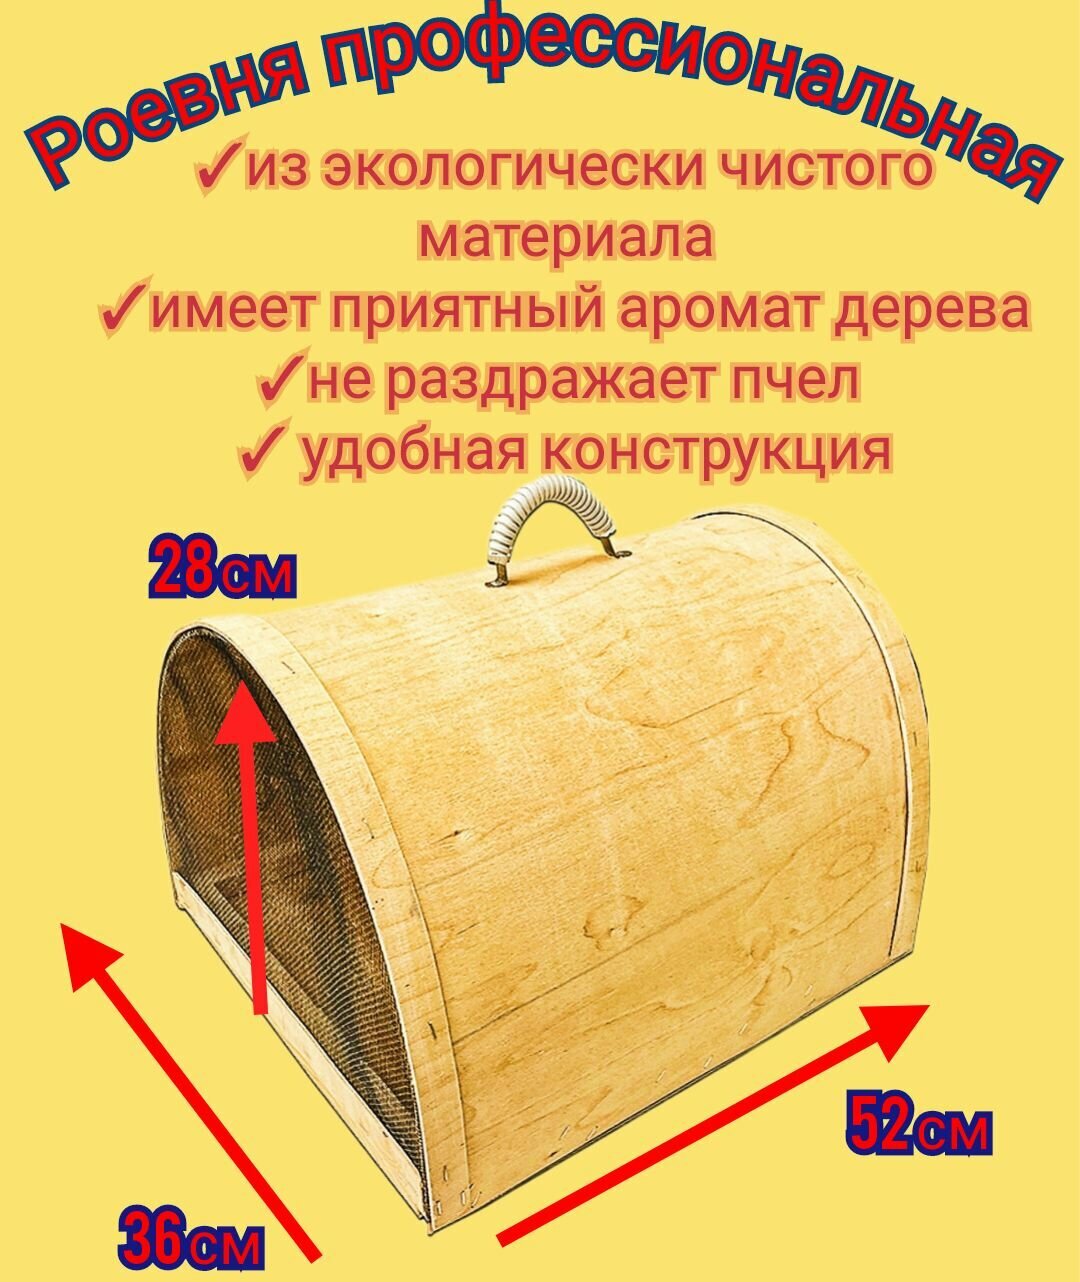 Роевня деревянная с открывающимся дном и эргономичной ручкой для переноски/ловушка/переноска для пчёл